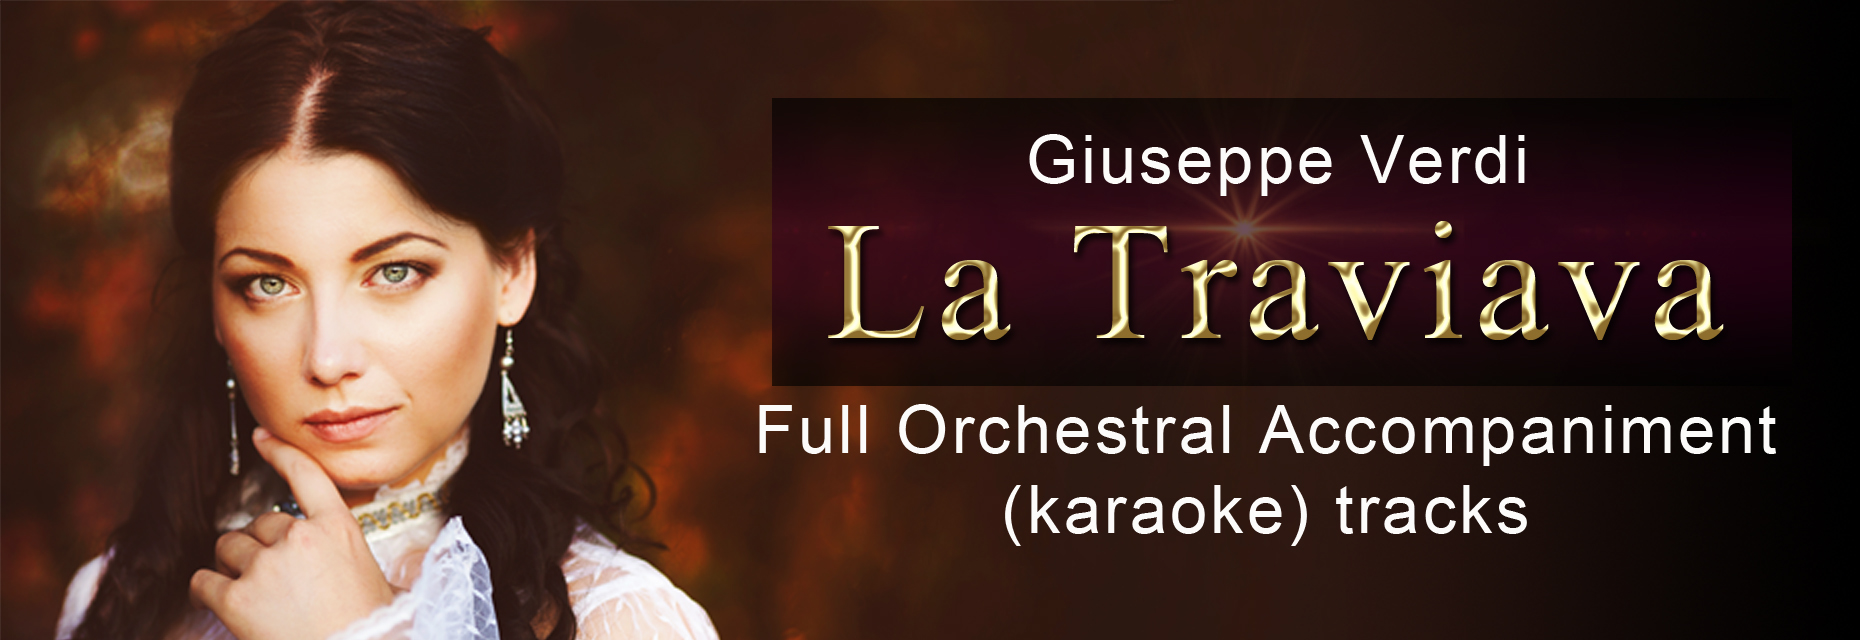 La Traviata, full orchestral accompaniment karaoke tracks for complete opera